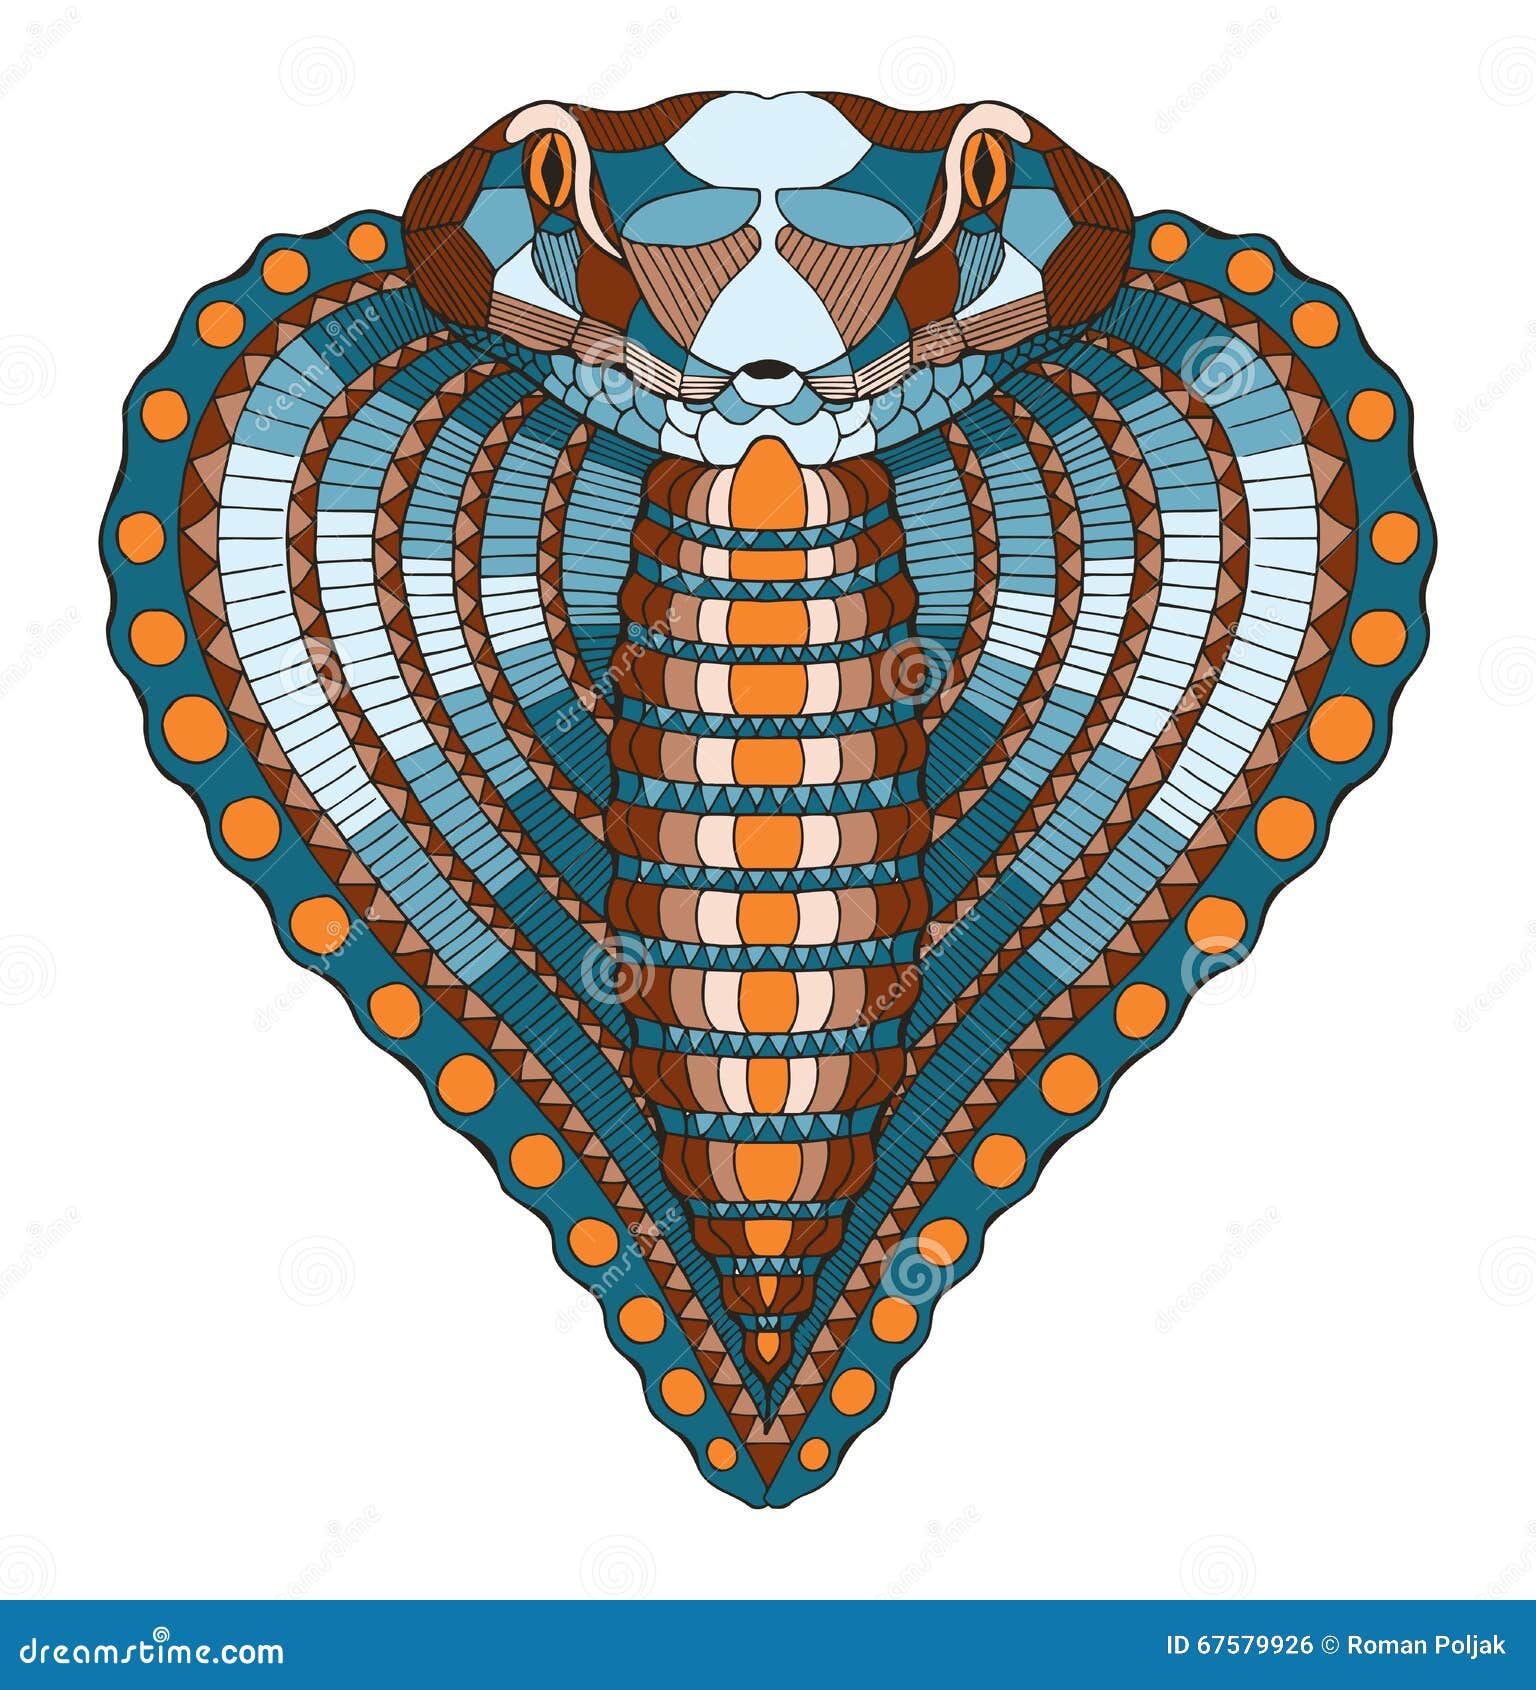 ilustração de vetor de peixe cabeça de cobra azul bonito dos